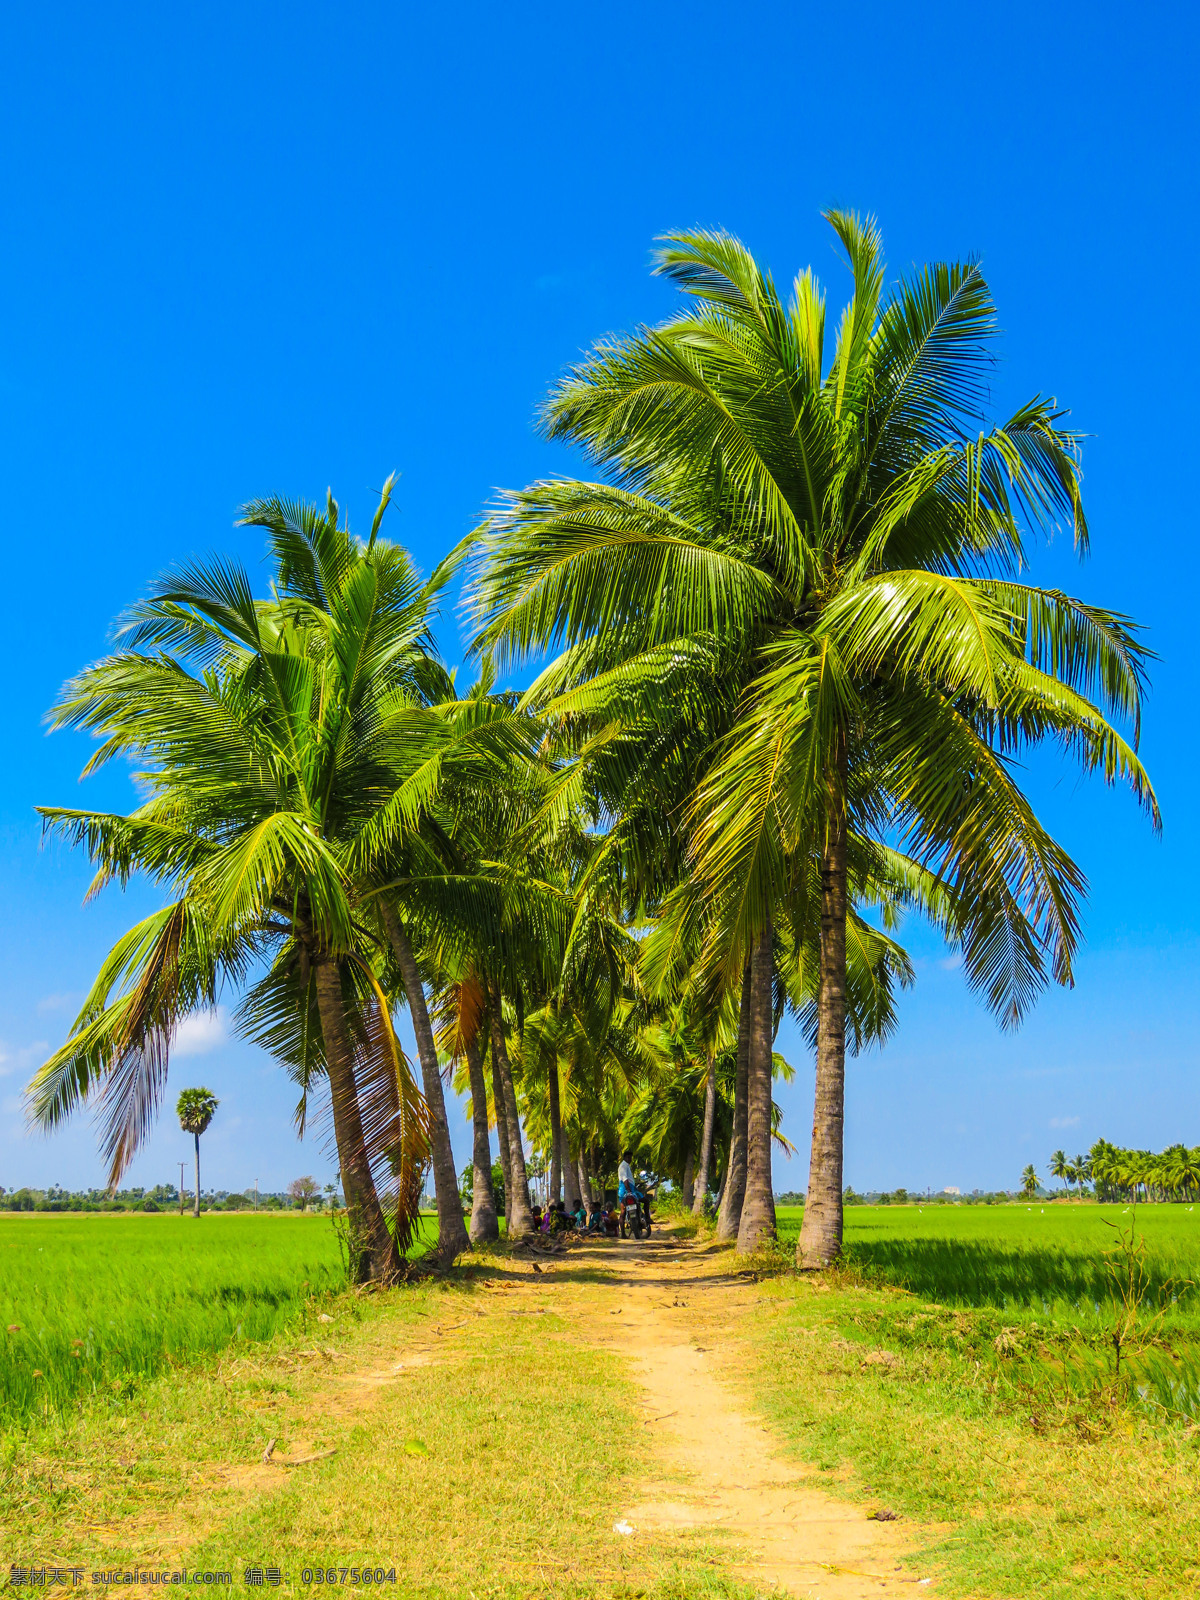 热带风景 热带 椰树 棕榈树 小路 蓝天 晴朗 绿树 国外 高清 旅游摄影 国外旅游